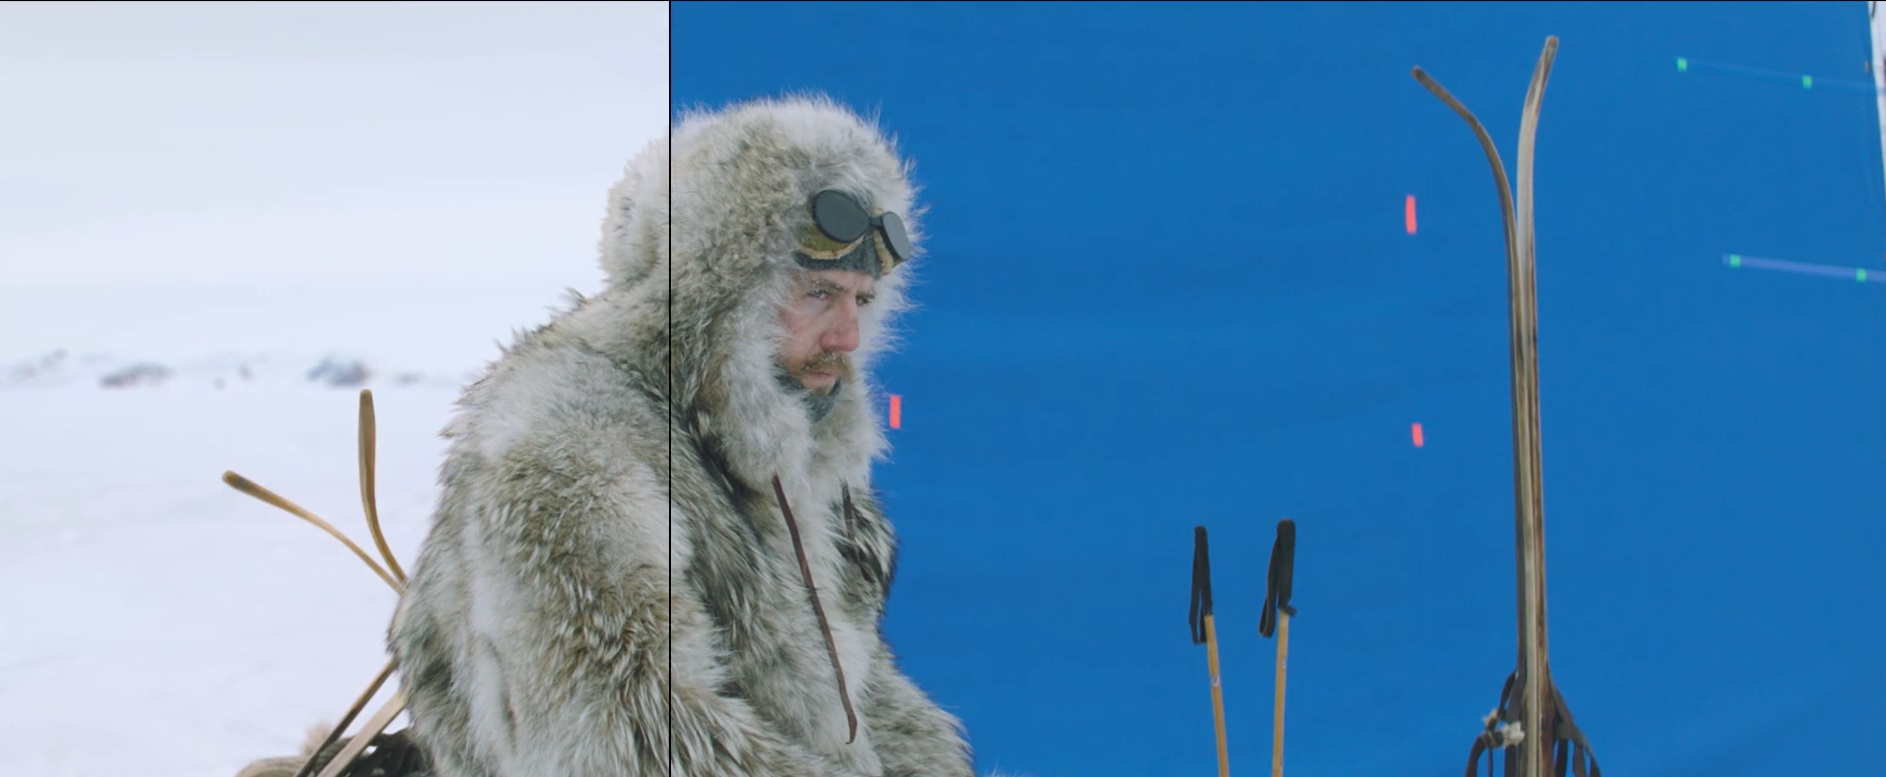 Amundsen: VFX Breakdown Reel by Goodbye Kansas Studios